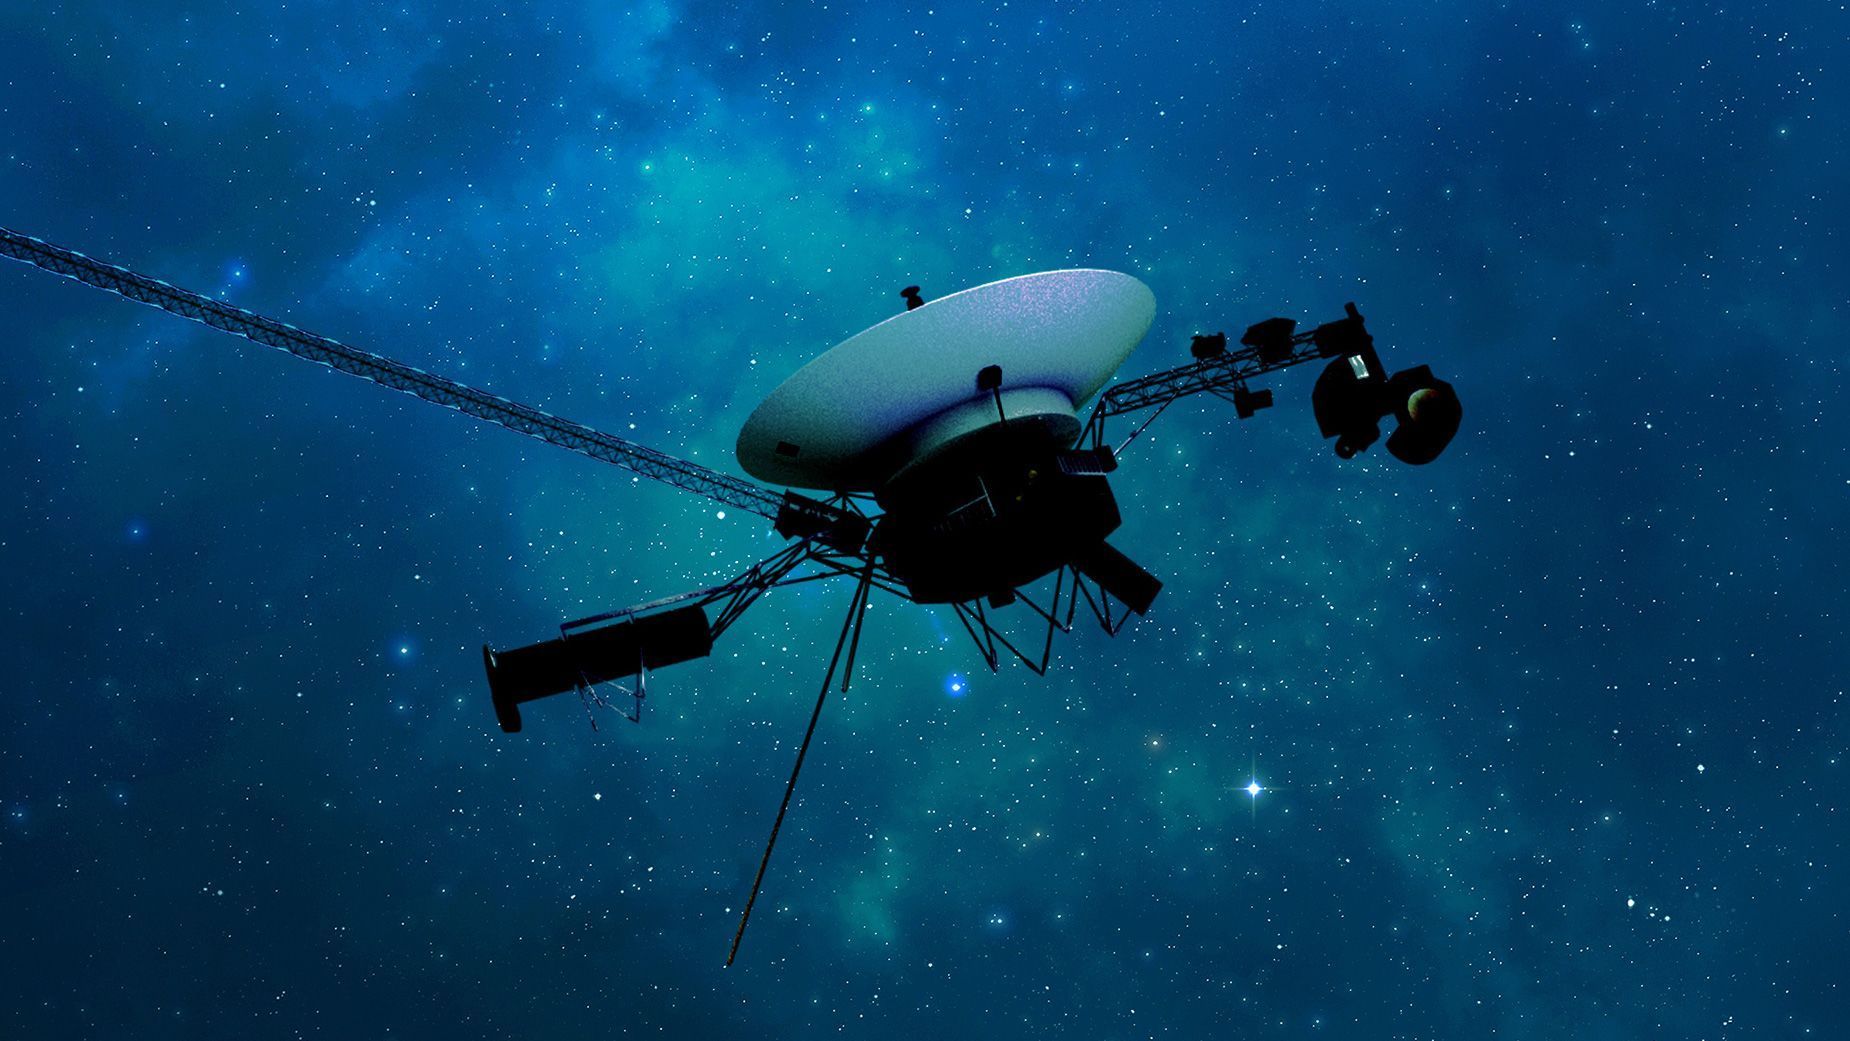 Sonda espacial Voyager 1 envia dados à Terra pela primeira vez em cinco meses